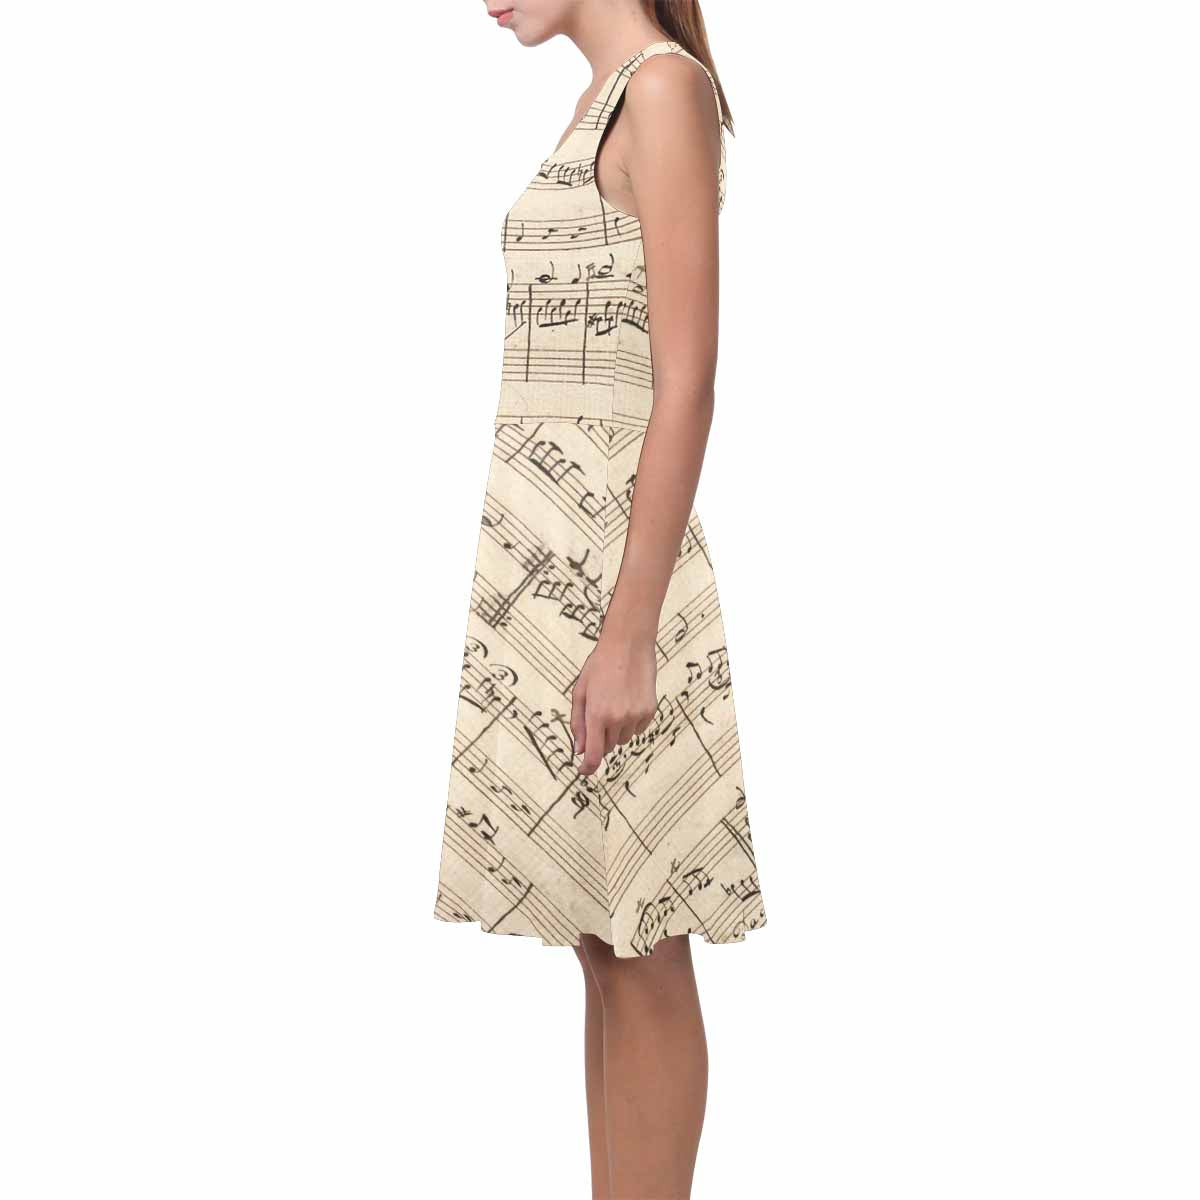 Antique General summer dress, MODEL 09534, design 21